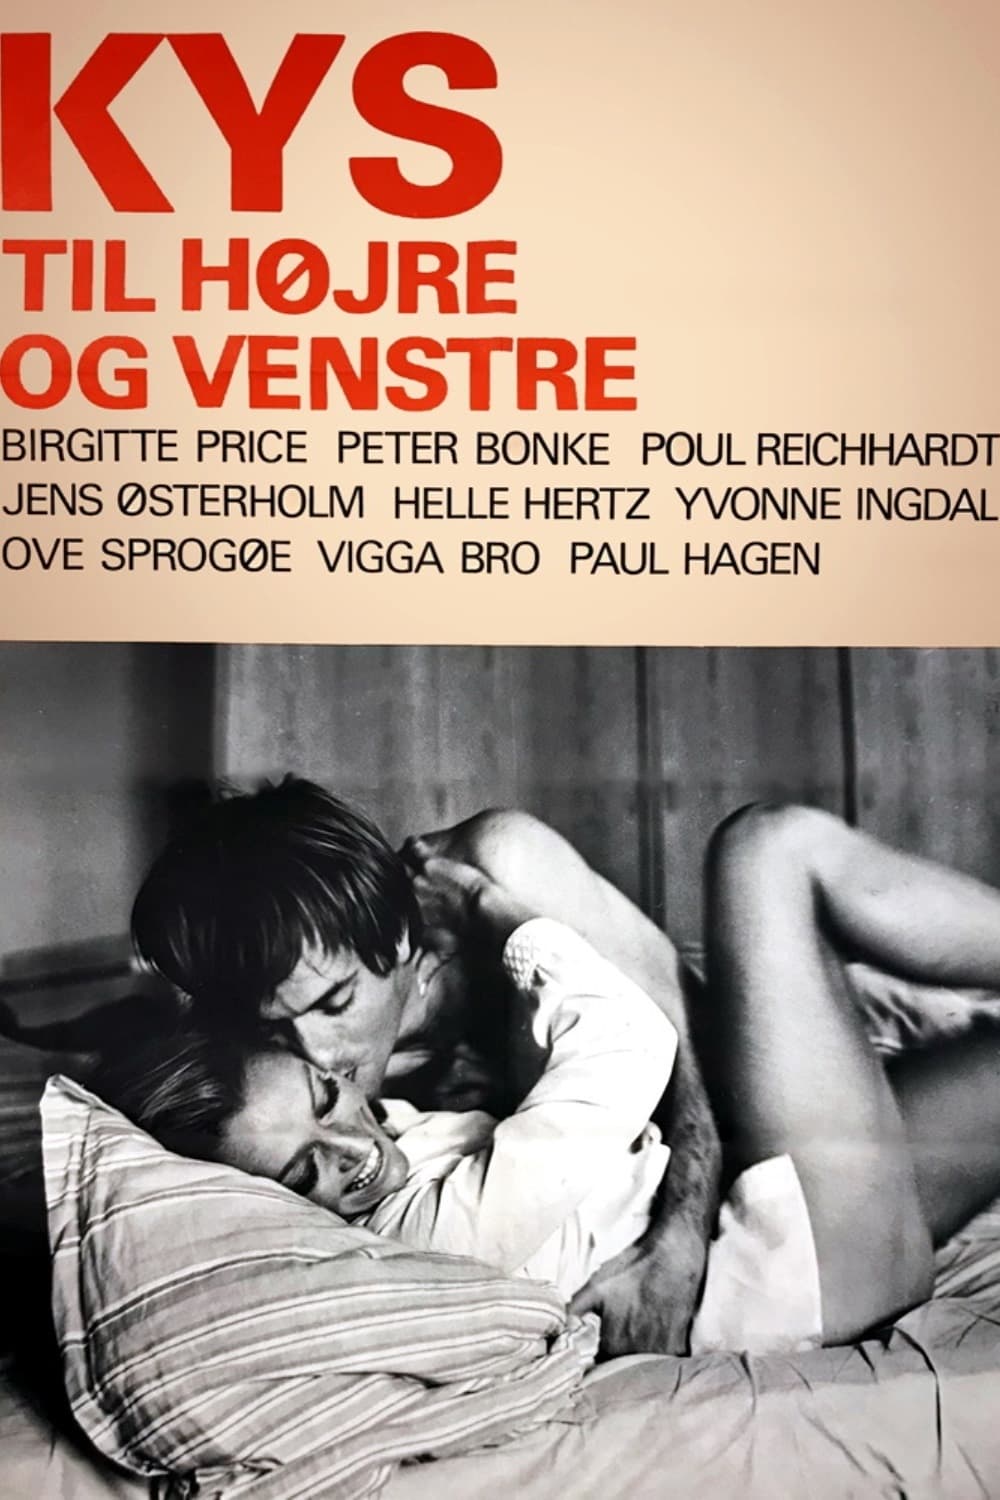 Kys til højre og venstre (1969)